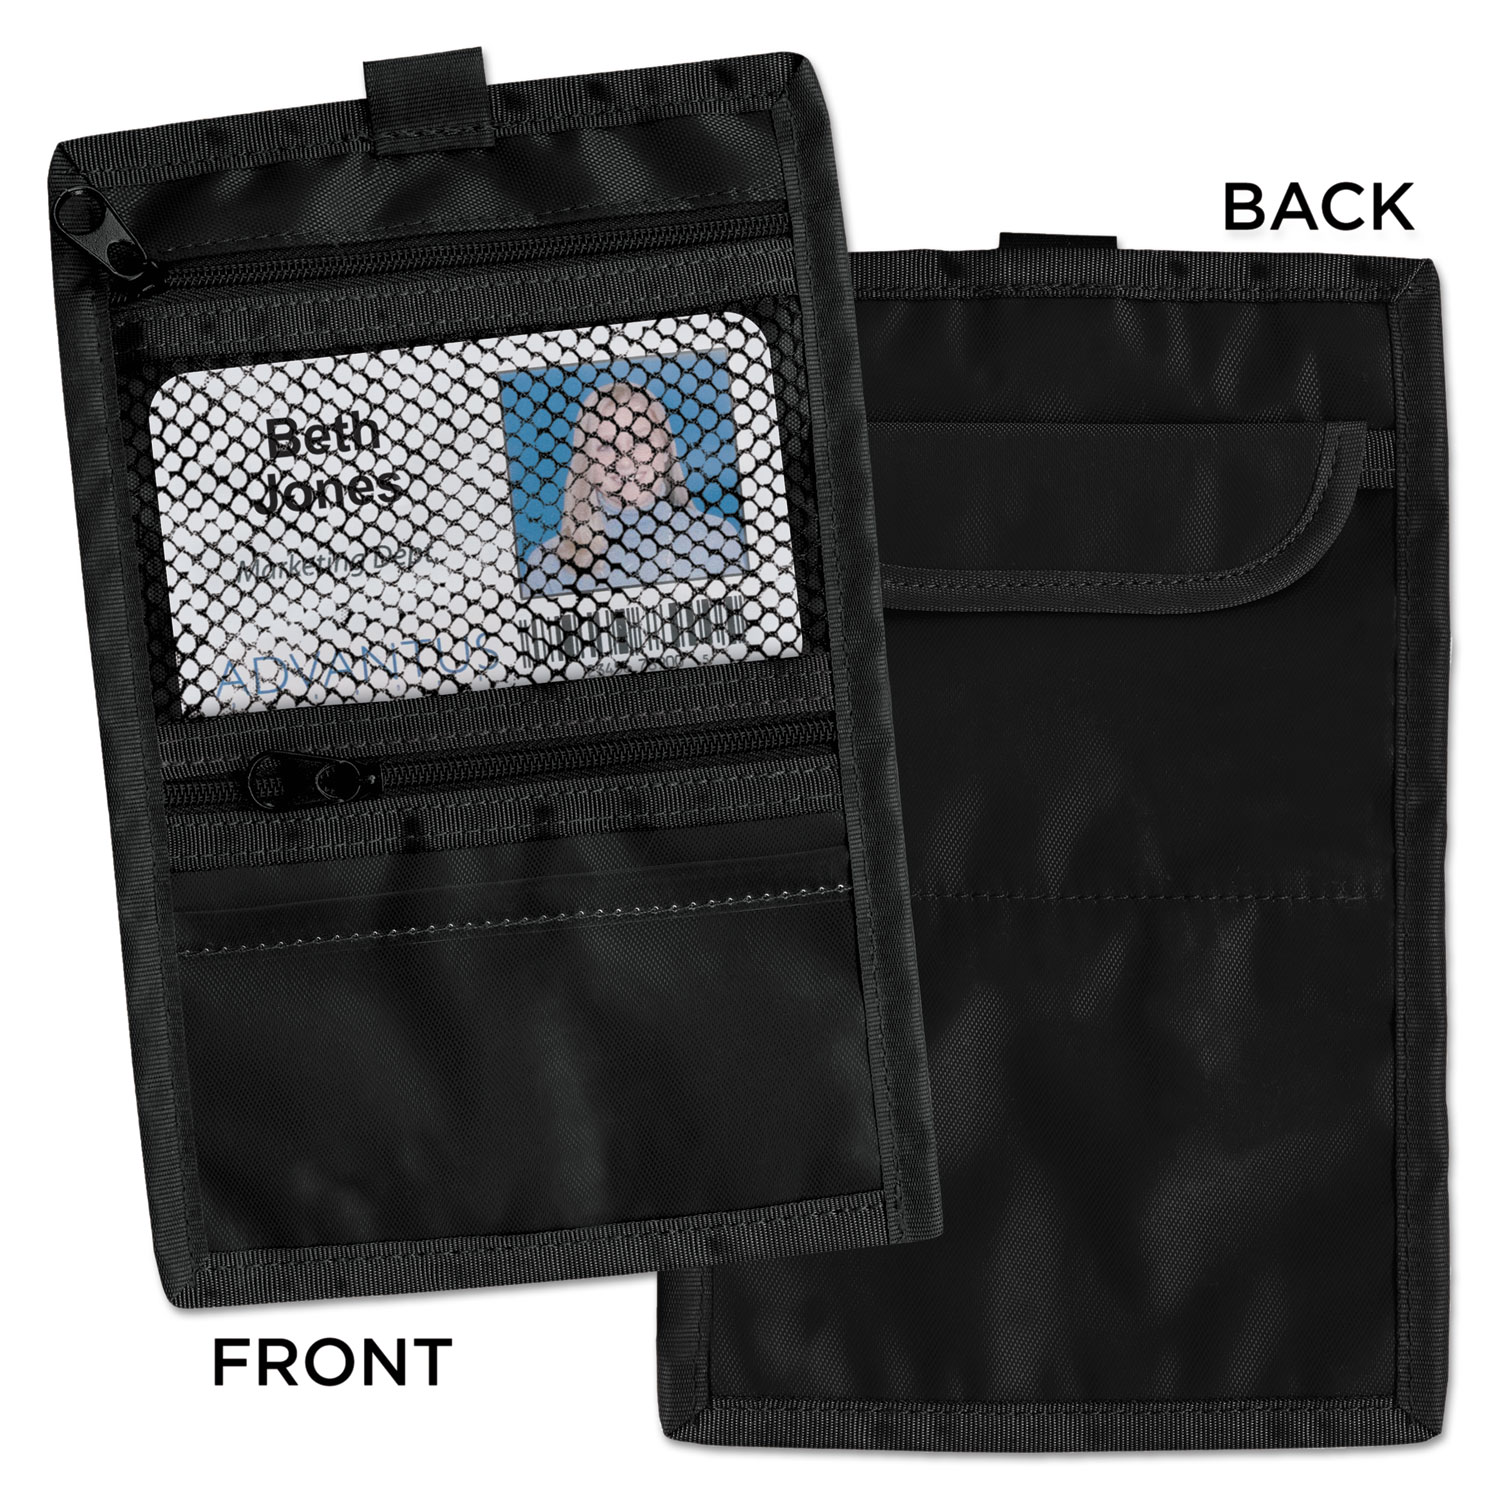  Advantus 76345 Travel ID/Document Holder, Hold 4 1/4 x 2 1/4 Cards, Black Nylon, 5/Pack (AVT76345) 